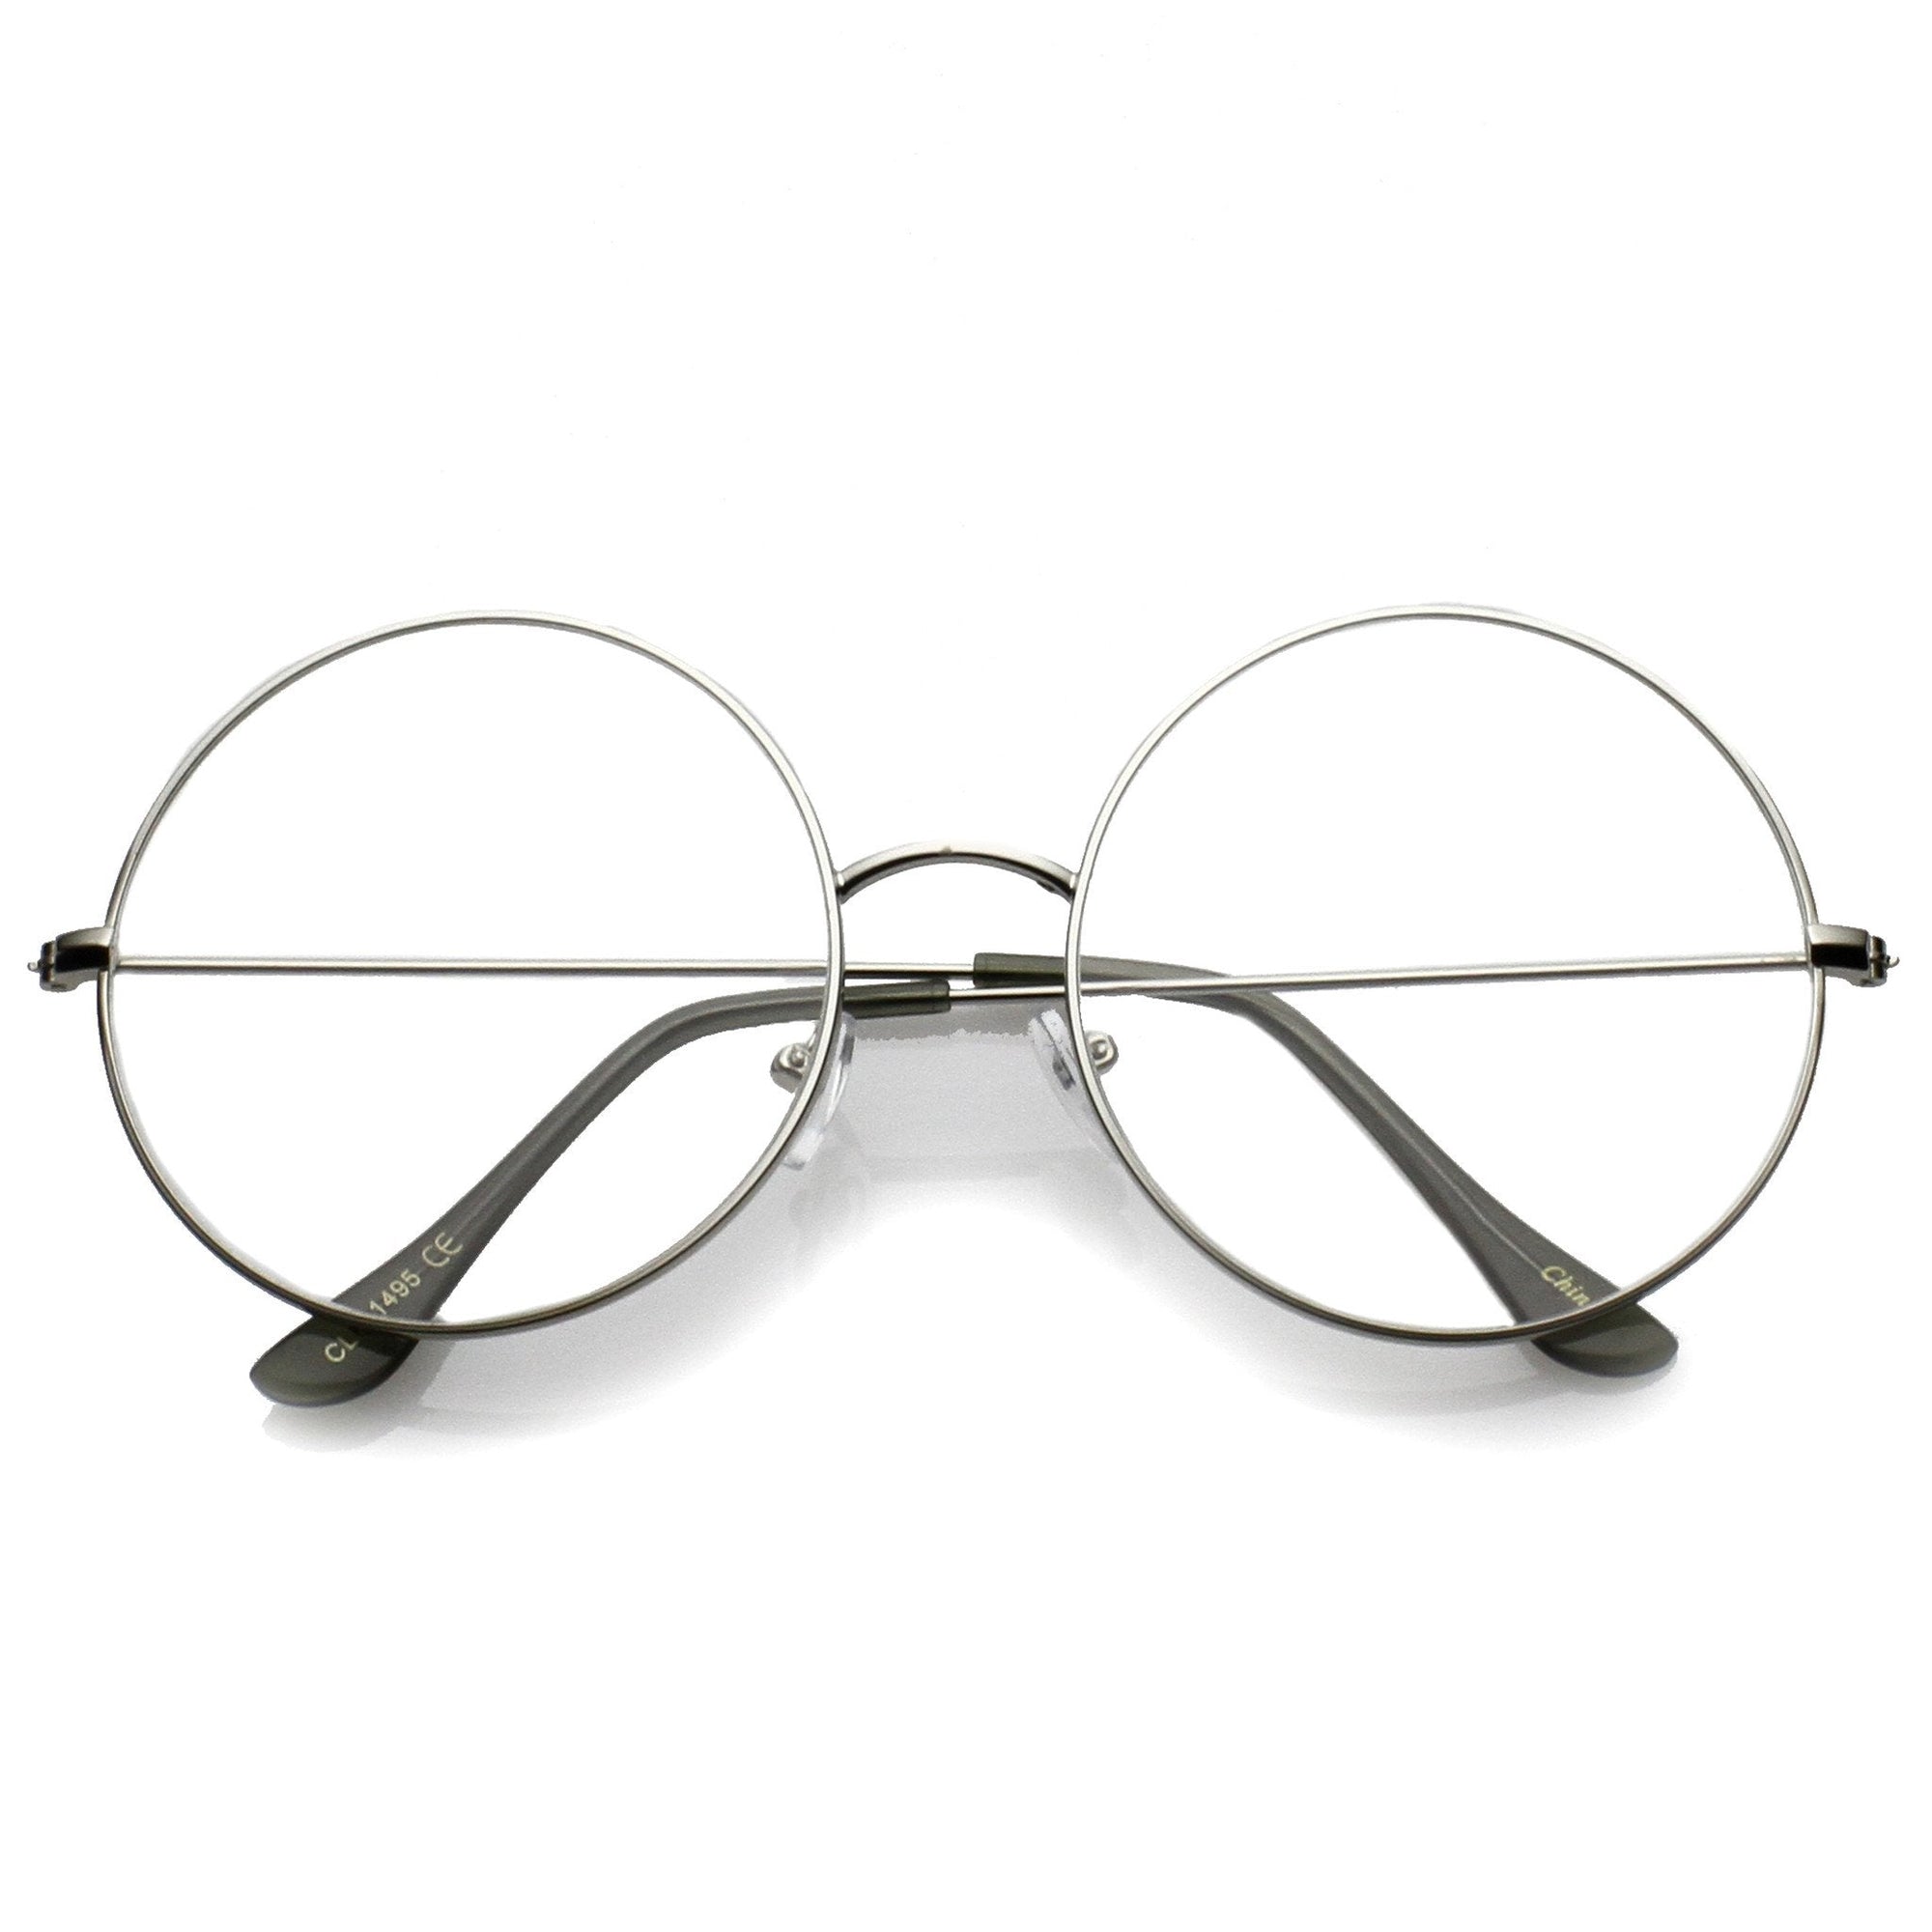 Gafas modernas y delgadas con lentes transparentes y redondas C143